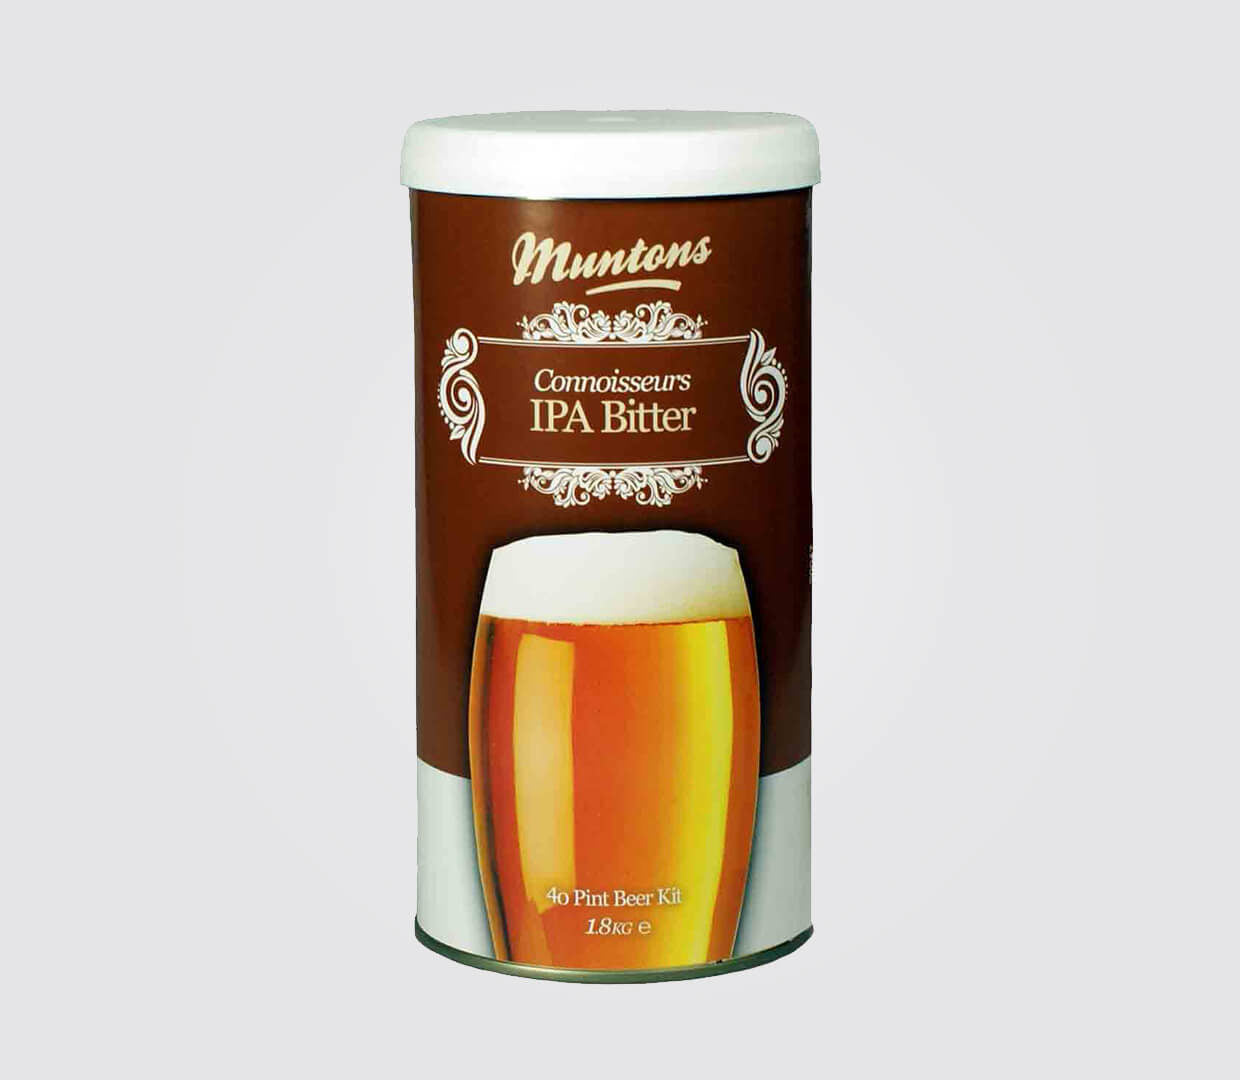 Muntons Connoisseurs Home Brew Kit Range